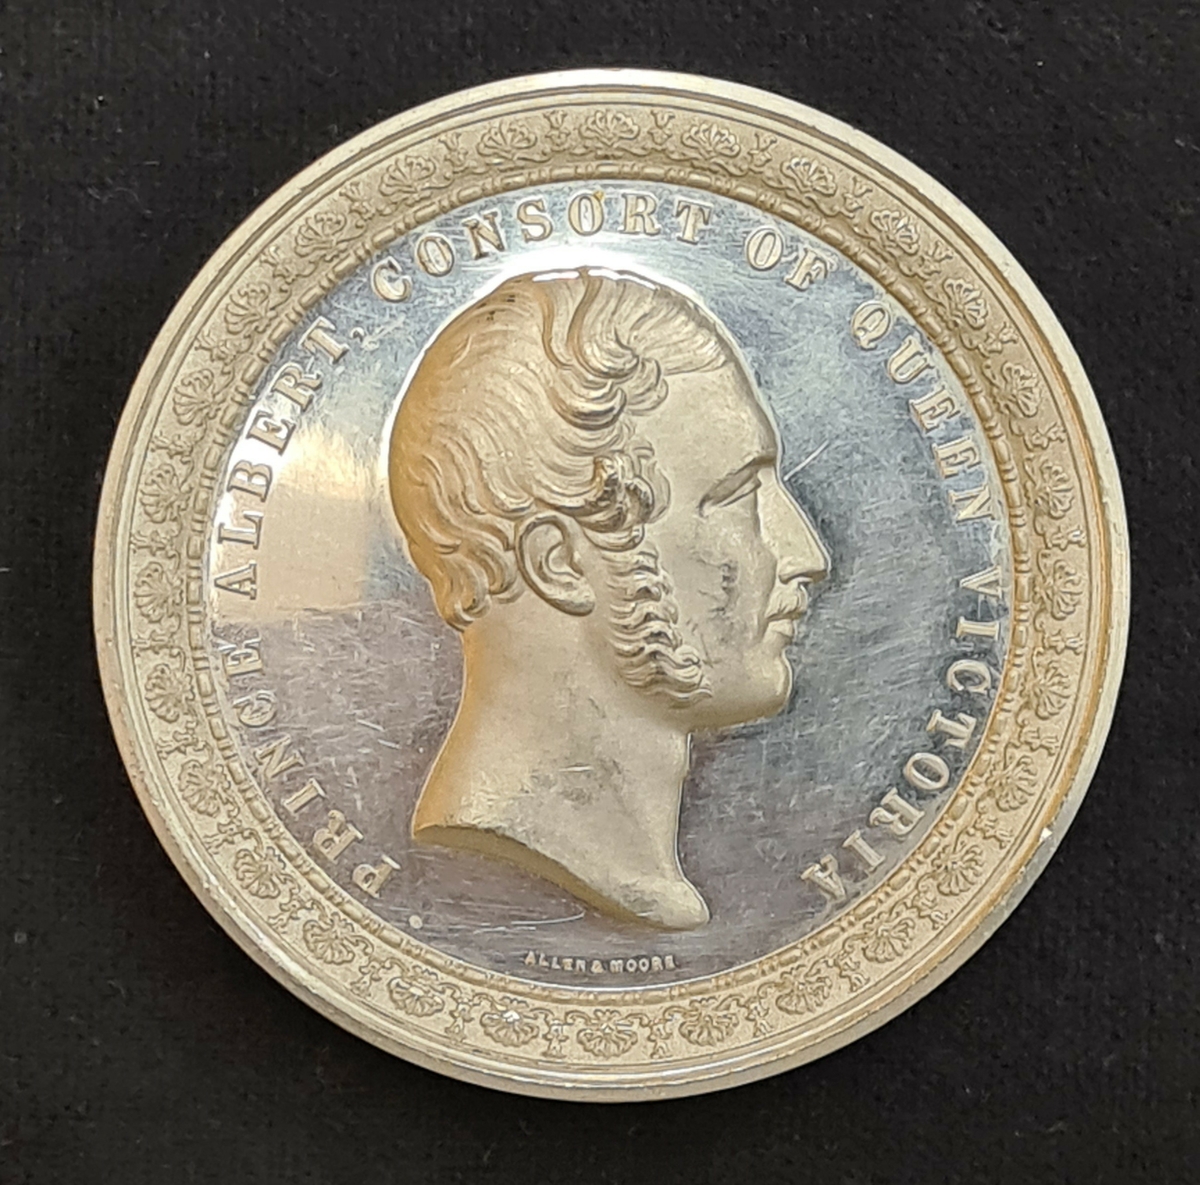 Medalj från Världsutställningen i London år 1851.
Präglingen visar Crystal Palace.